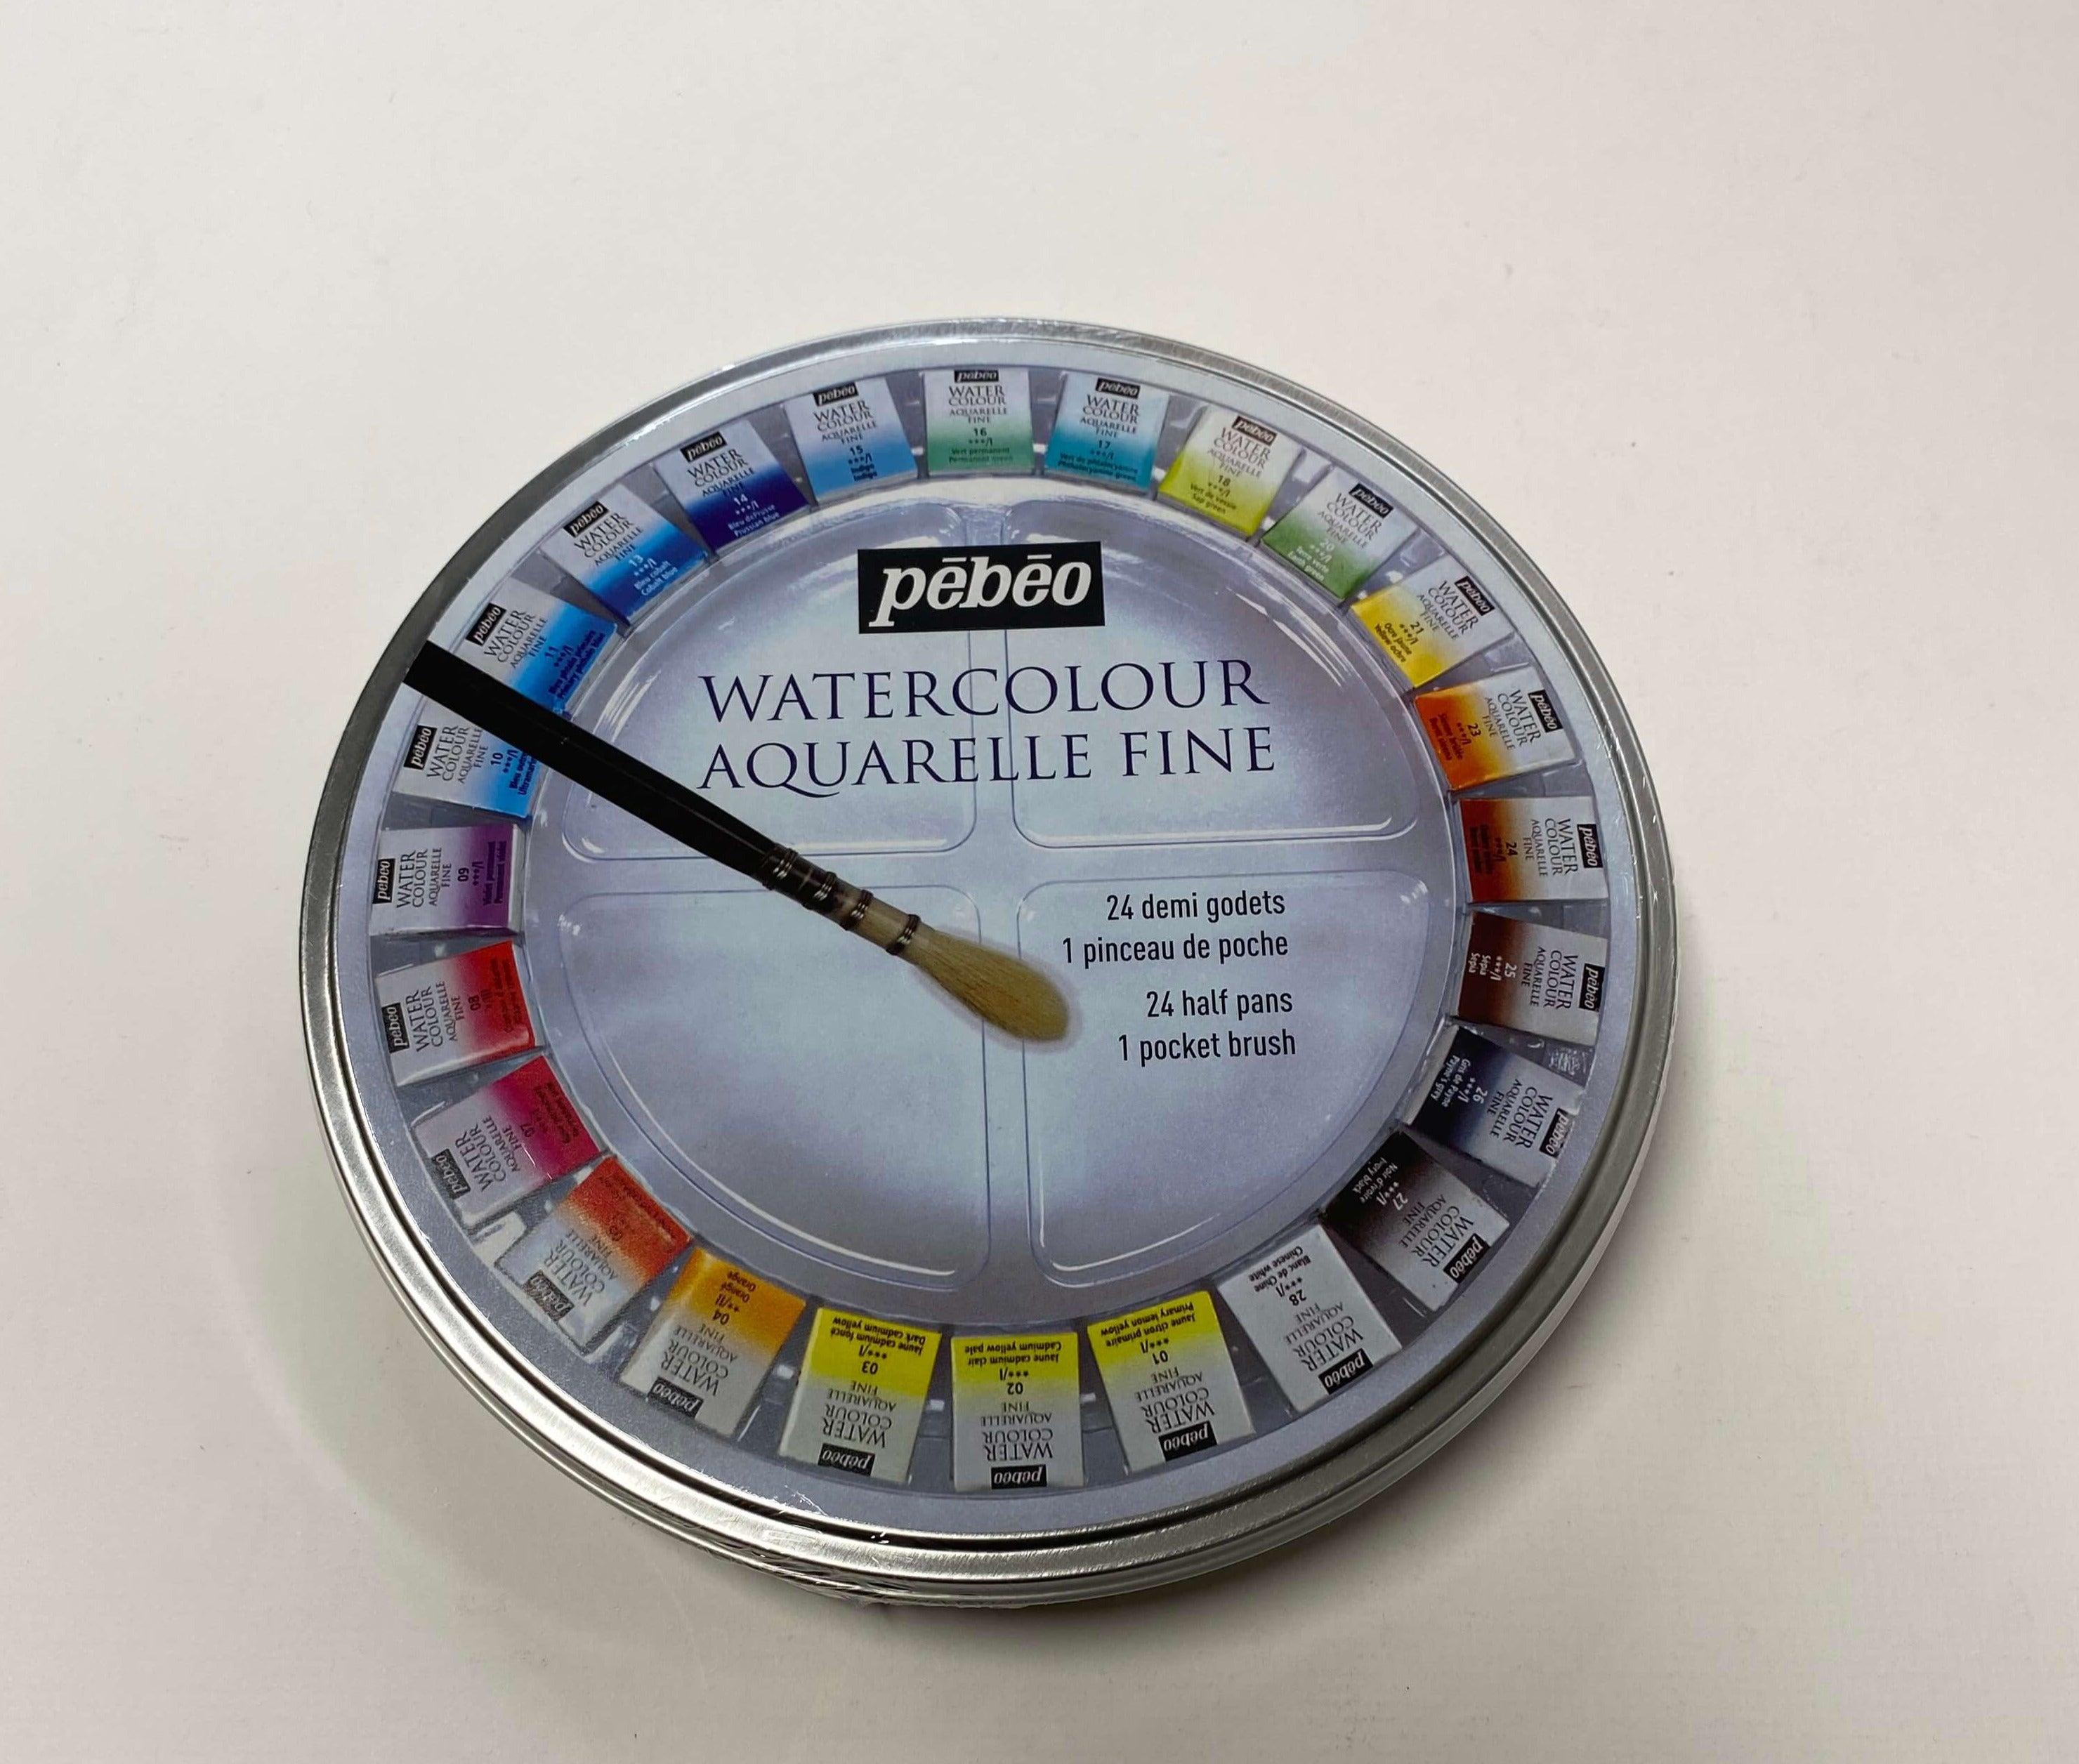 Pebeo 24 1/2 pan watercolour round tin 